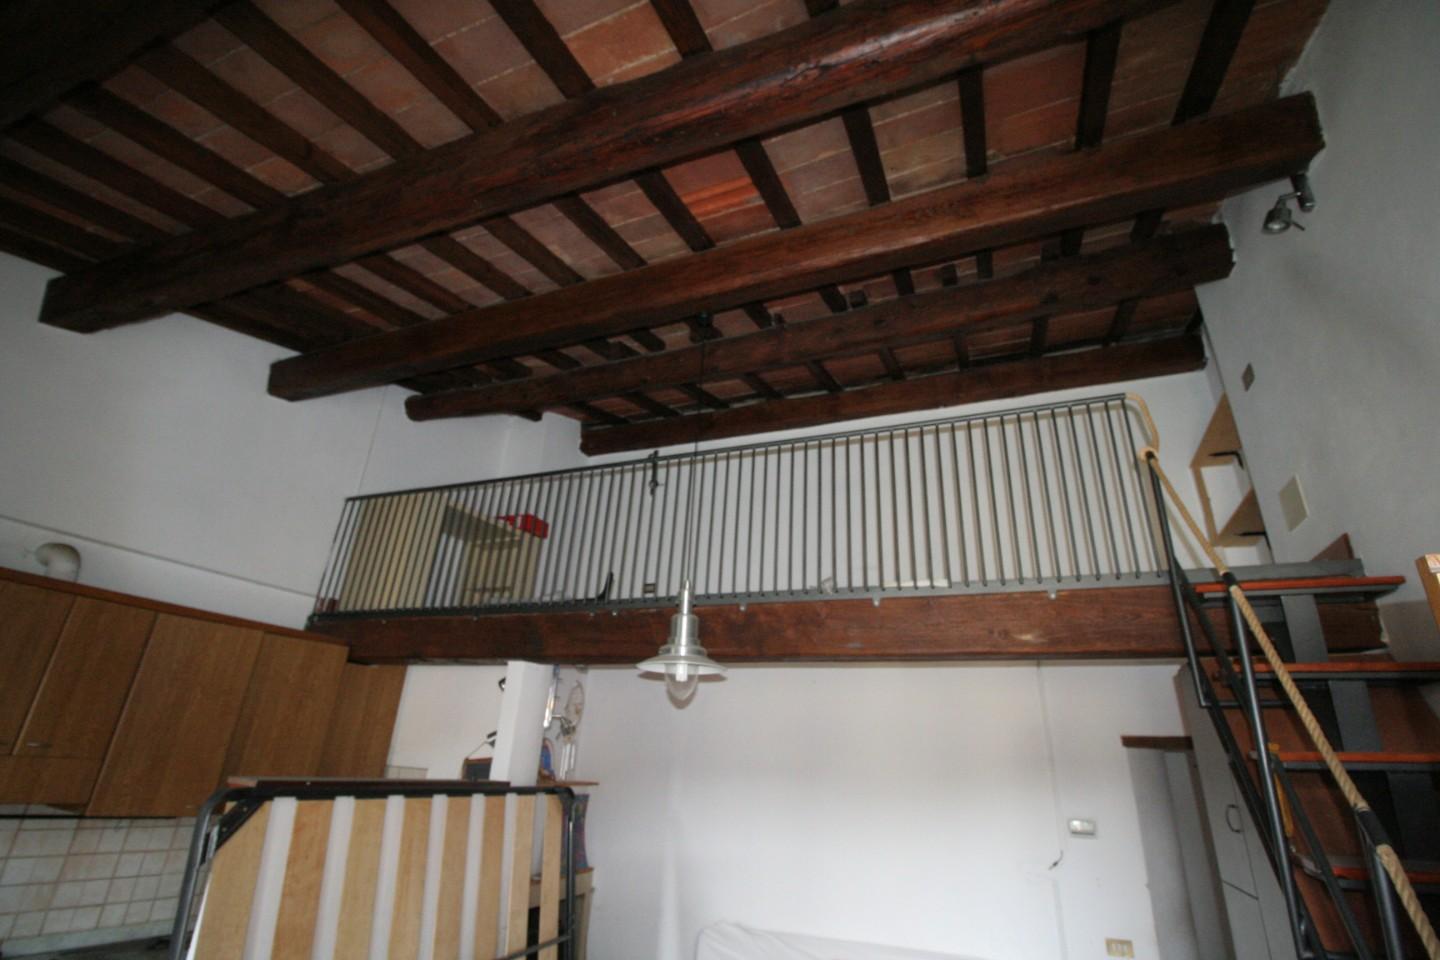 Apartment for sale in Poggibonsi (SI)